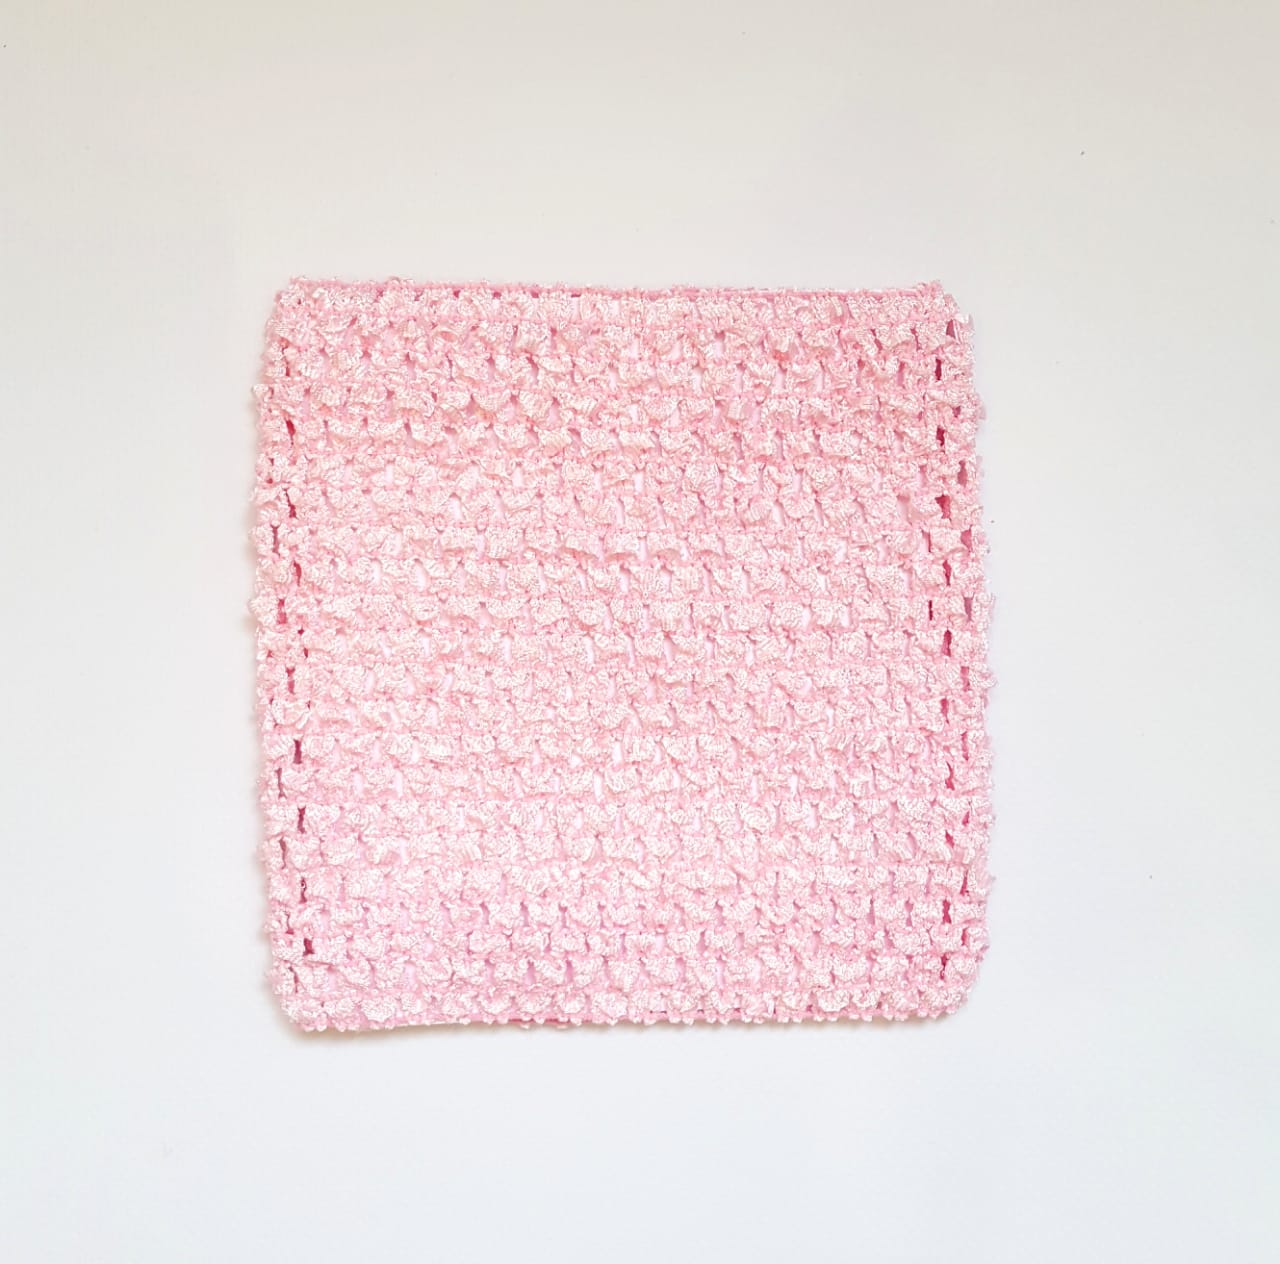 Ткань Caramelkalife Топ-резинка, размер 15*15 см. Цвет Нежно-розовый.